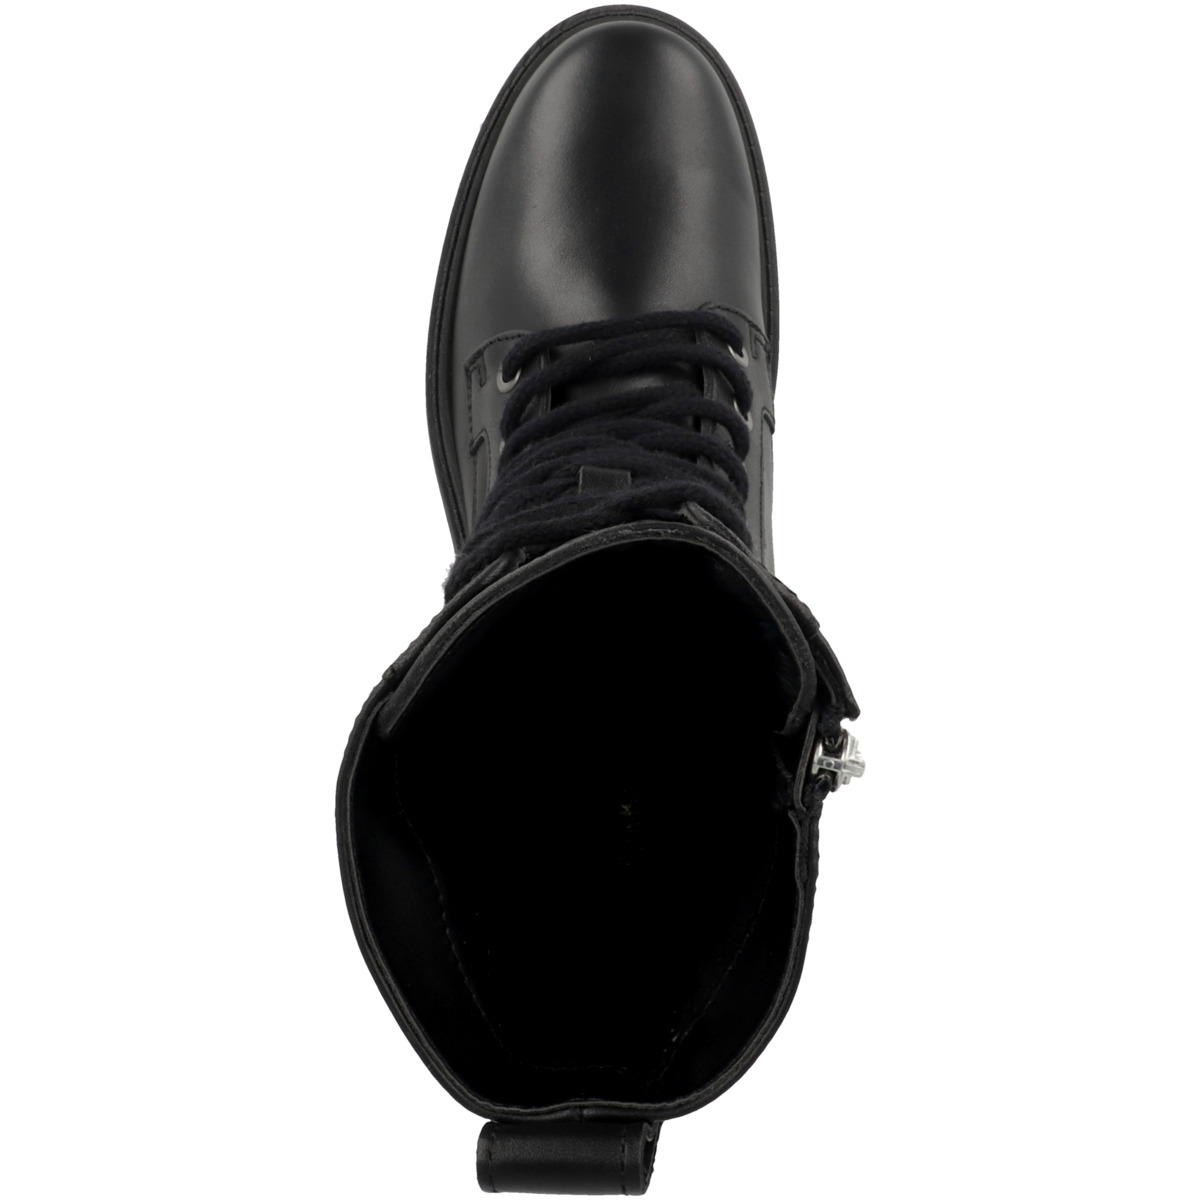 Clarks Orinoco2 Style Boots schwarz